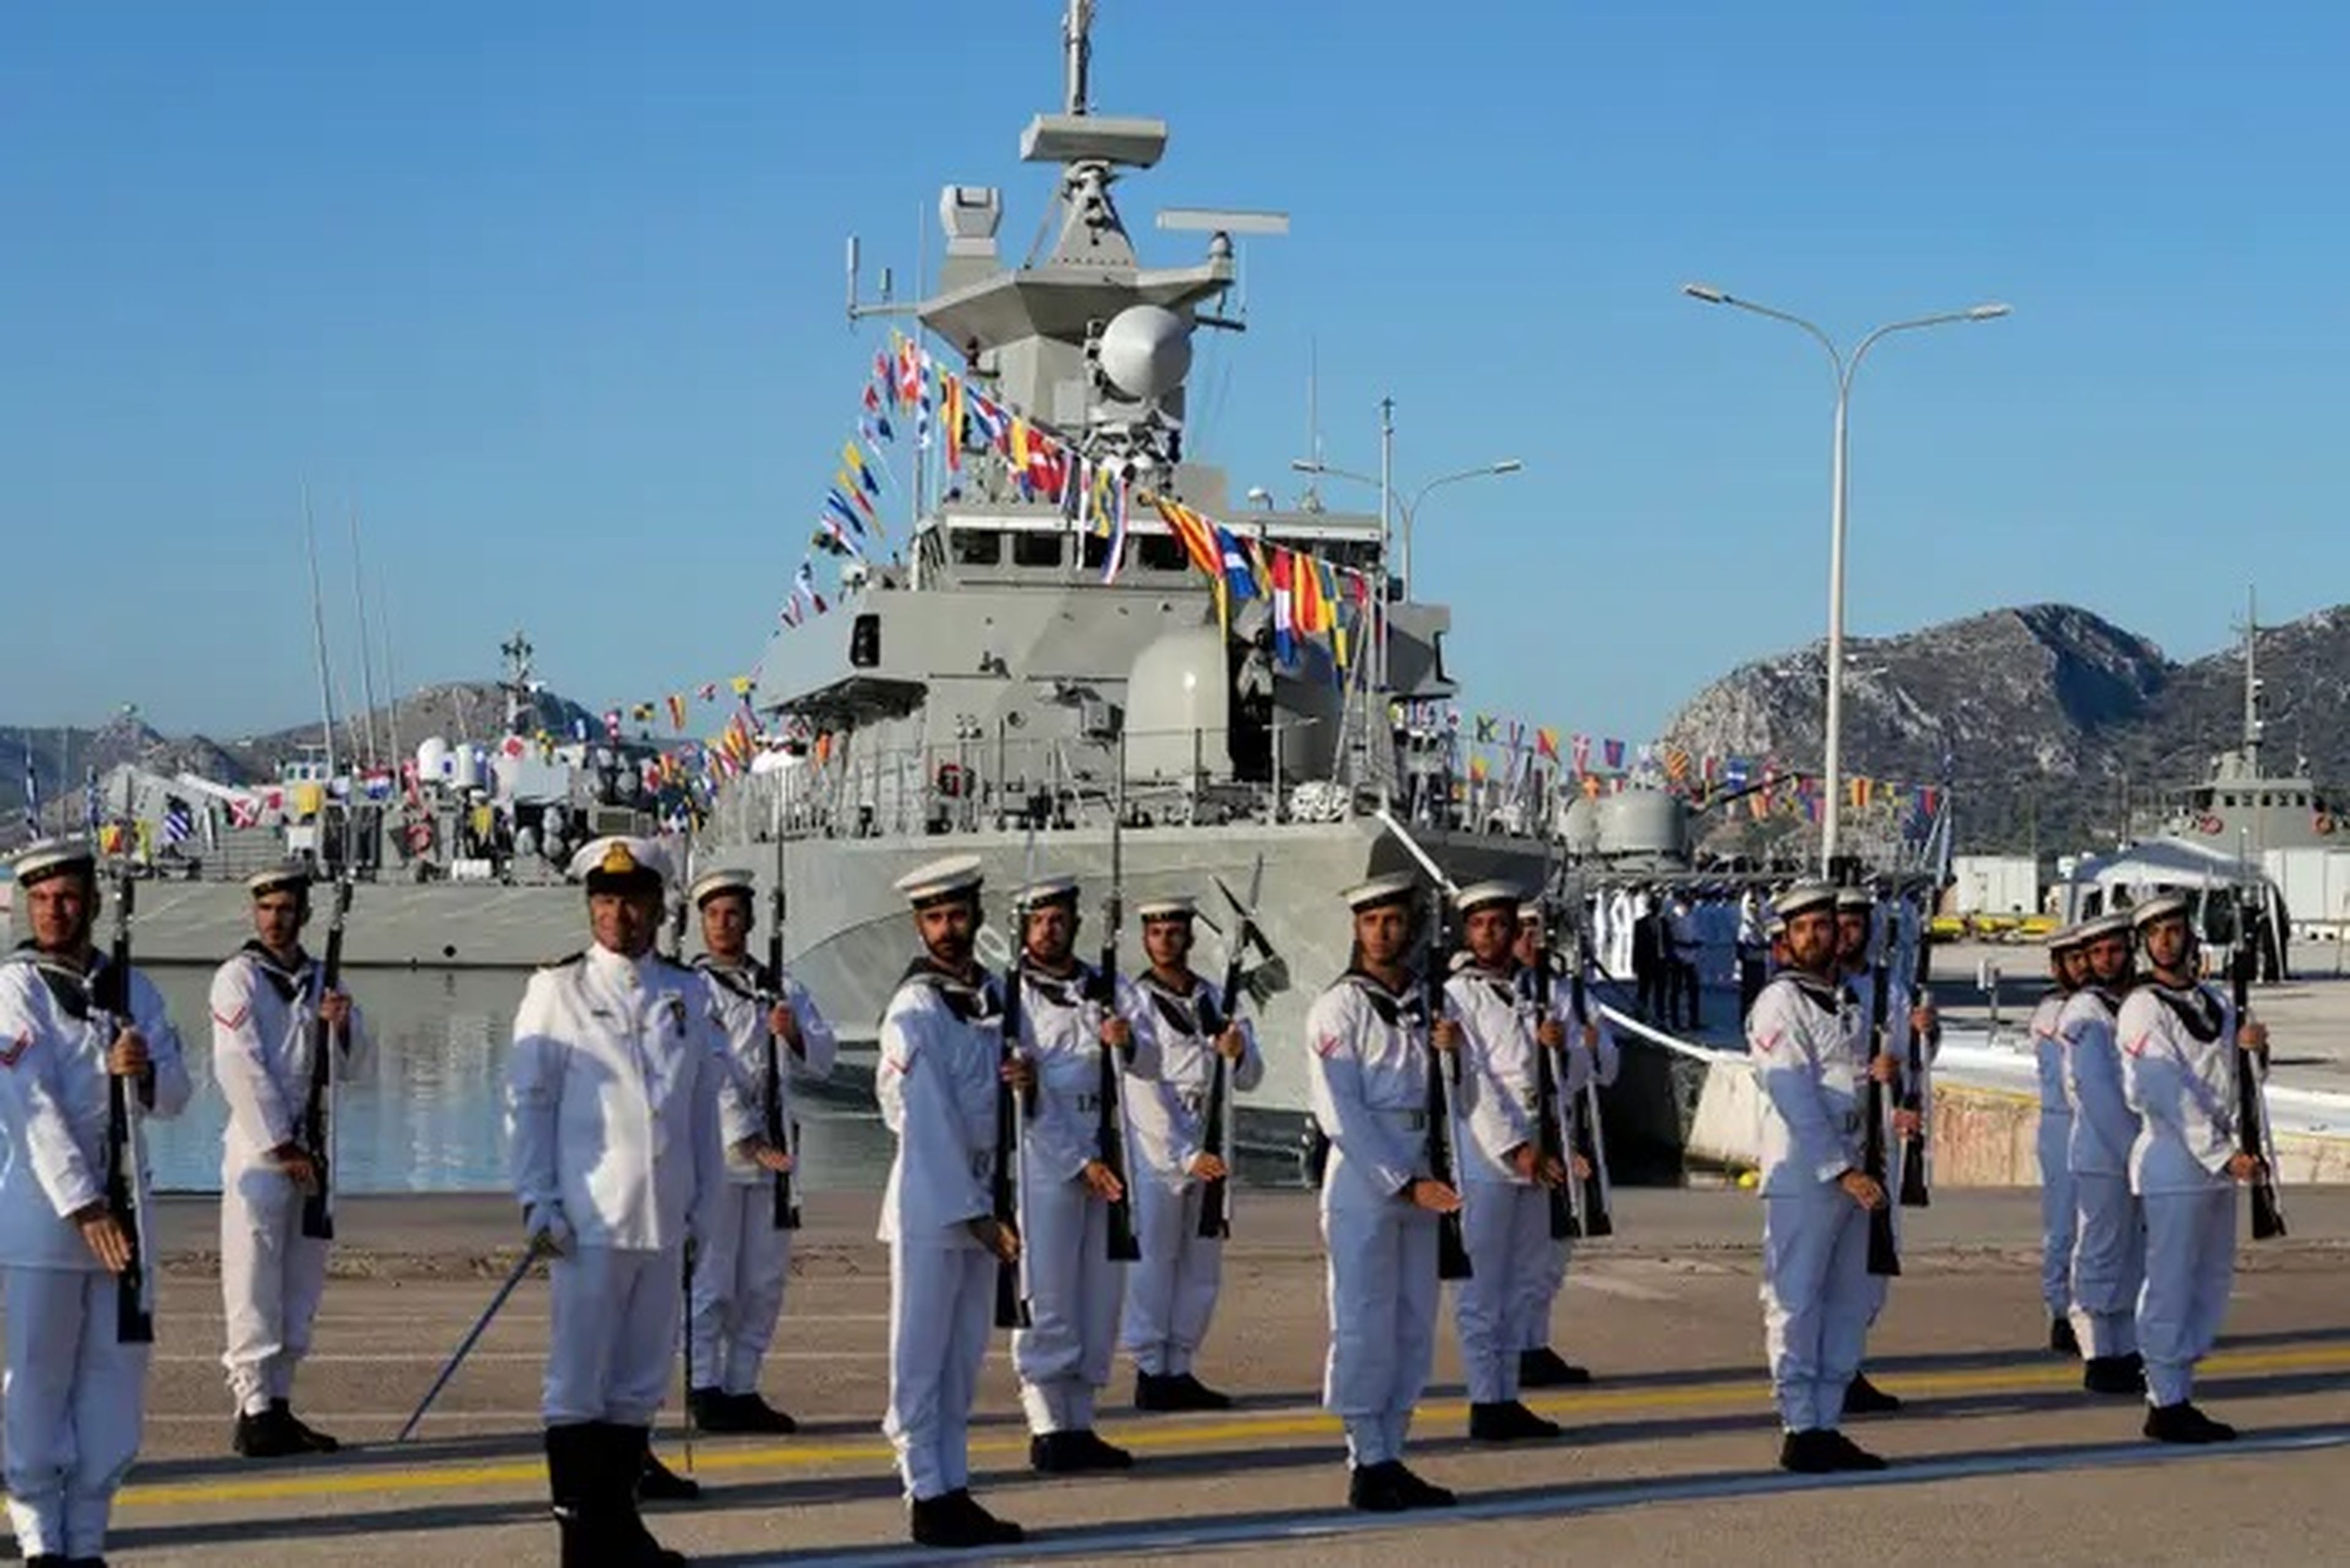 Marineros en la ceremonia de botadura del Lt. Vlachakos en una base naval cerca de Atenas, Grecia, en septiembre.